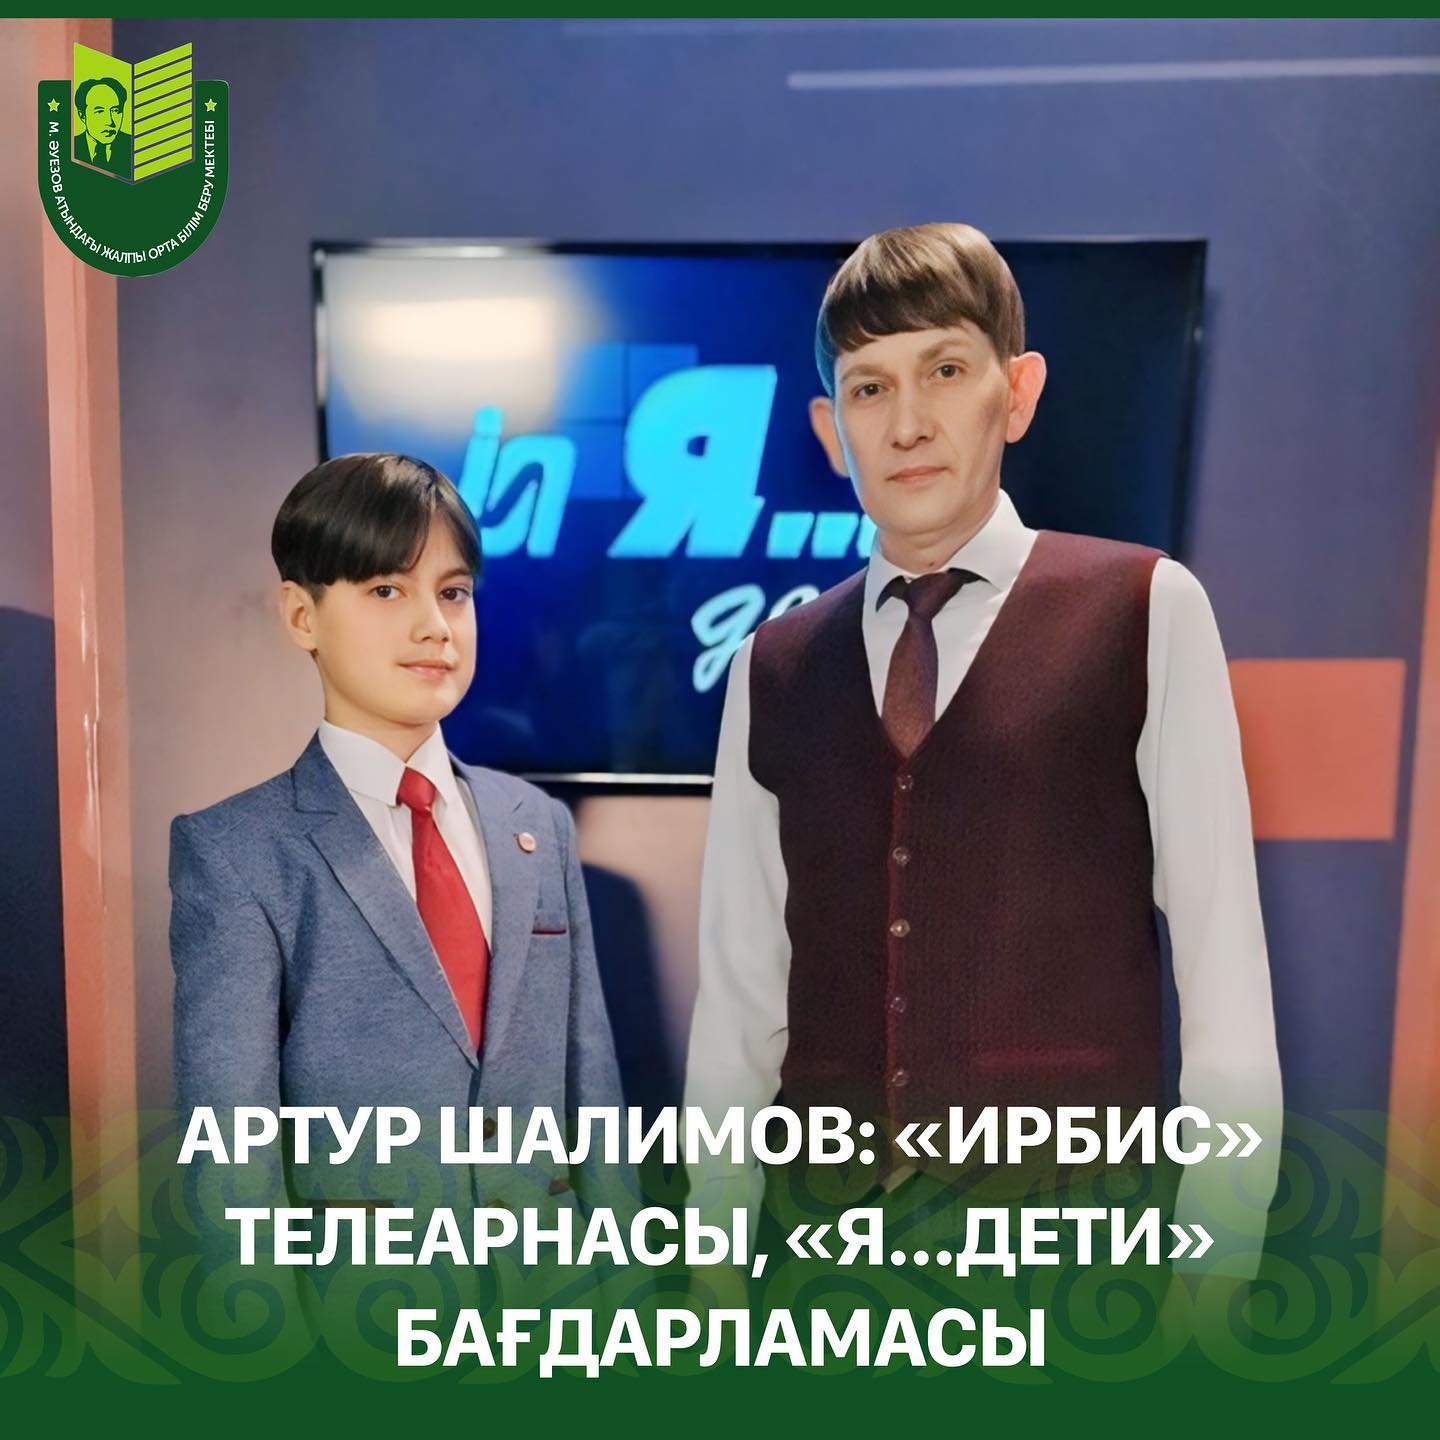 24 февраля ученик 5 М класса школы им. Мухтара Ауэзова Шалимов Артур стал участником передачи «Я…Дети» с Тимофеем Голевым на телеканале «Ирбис».